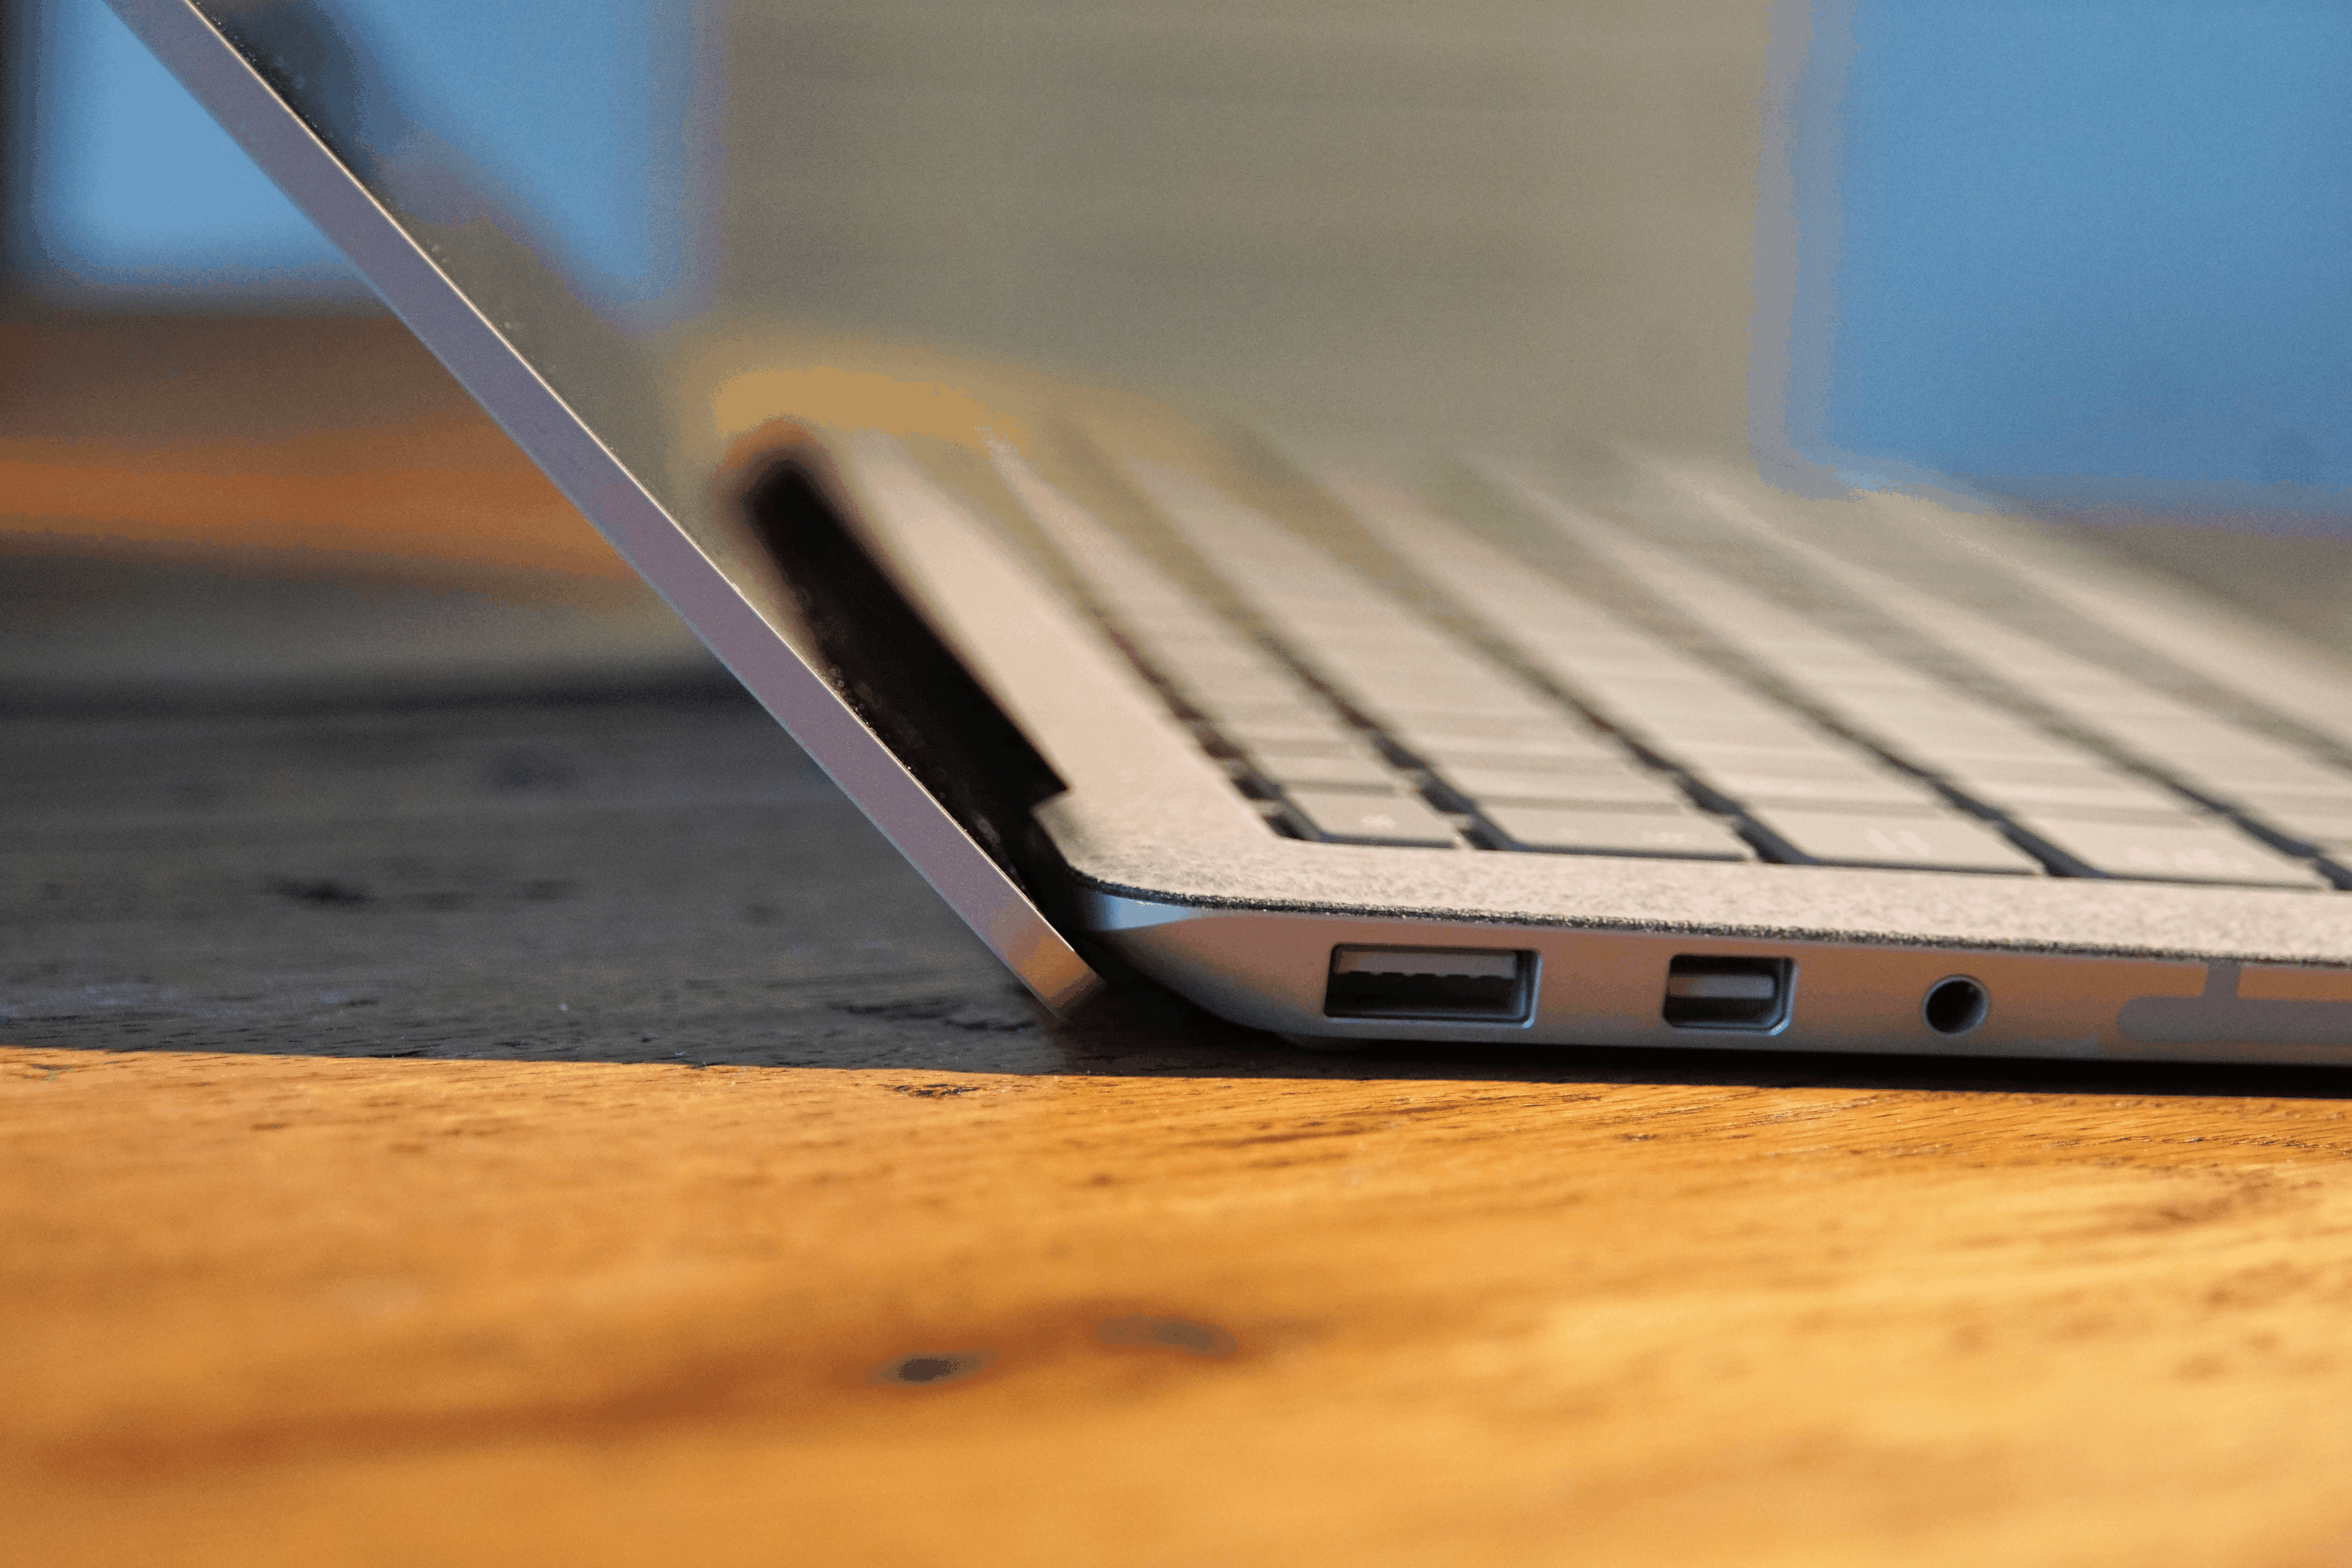 Der Surface Laptop hat einen USB-3.0-Anschluss, Mini DisplayPort für einen externen Monitor und die Buchse für den Kopfhörer.